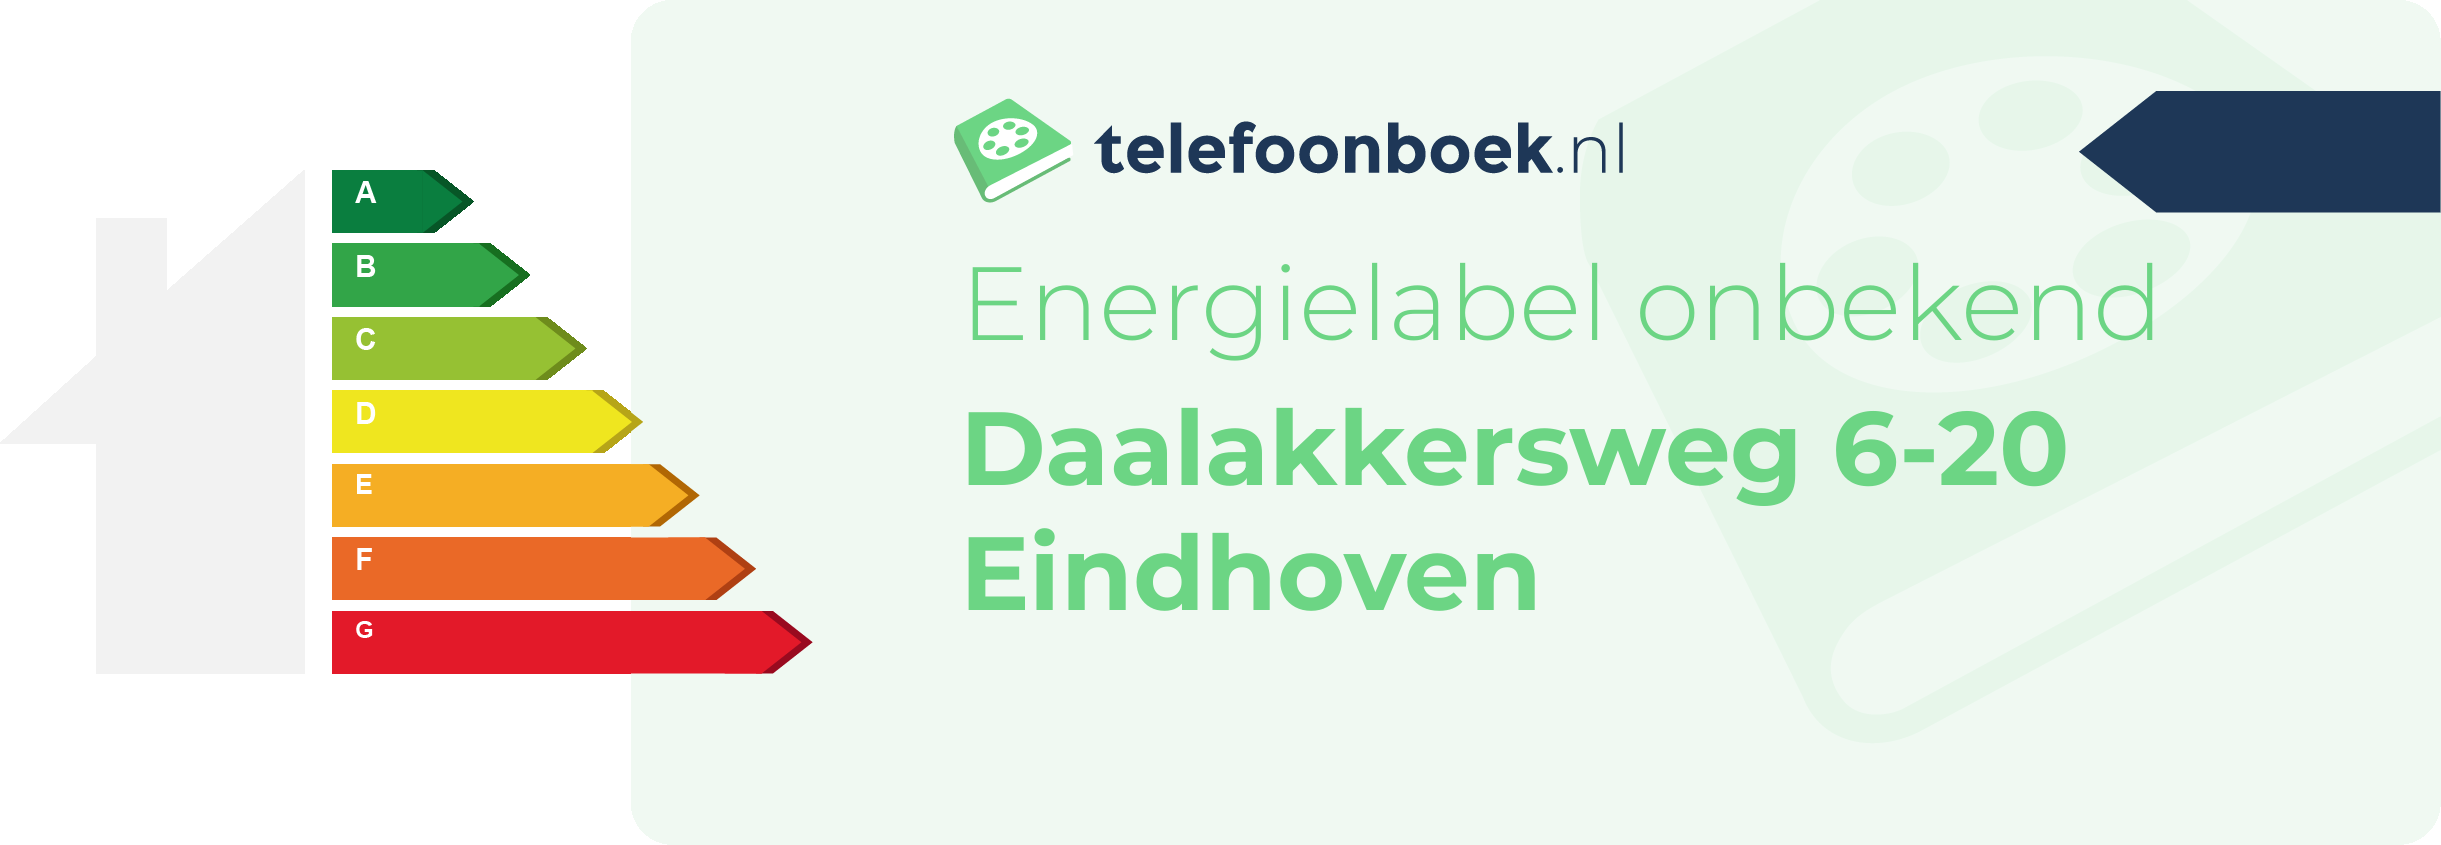 Energielabel Daalakkersweg 6-20 Eindhoven